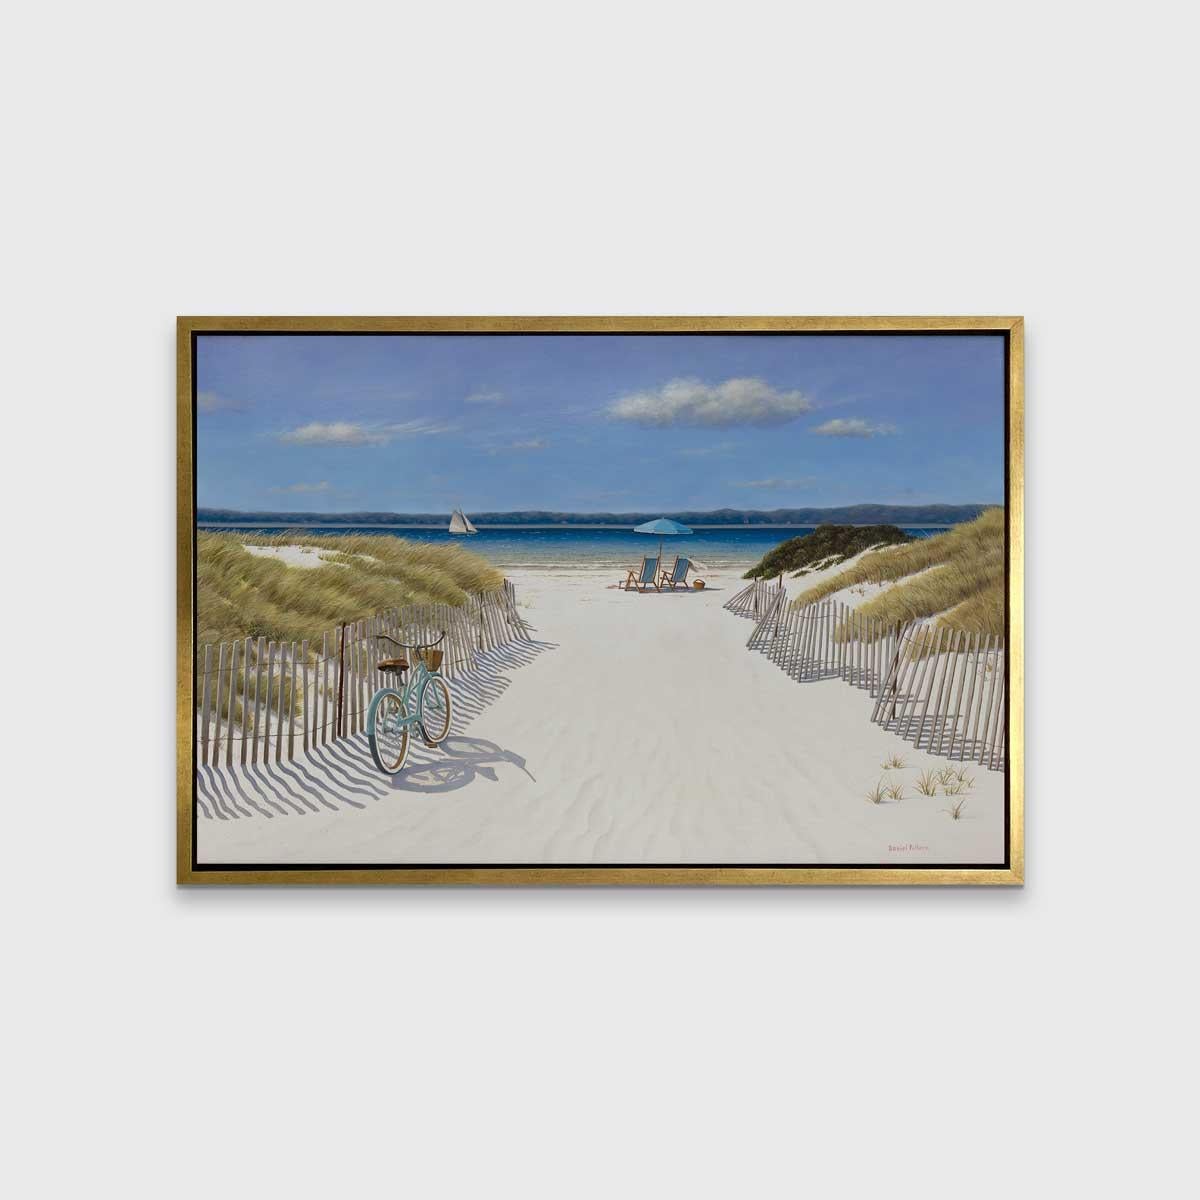 Dieser limitierte Druck von Daniel Pollera zeigt einen sandigen Weg mit einem Holzzaun und Gras auf beiden Seiten, der zu einem Strand führt. Zwei Liegestühle und ein Sonnenschirm blicken auf ein leuchtend blaues Gewässer, mit Hügeln am Horizont,